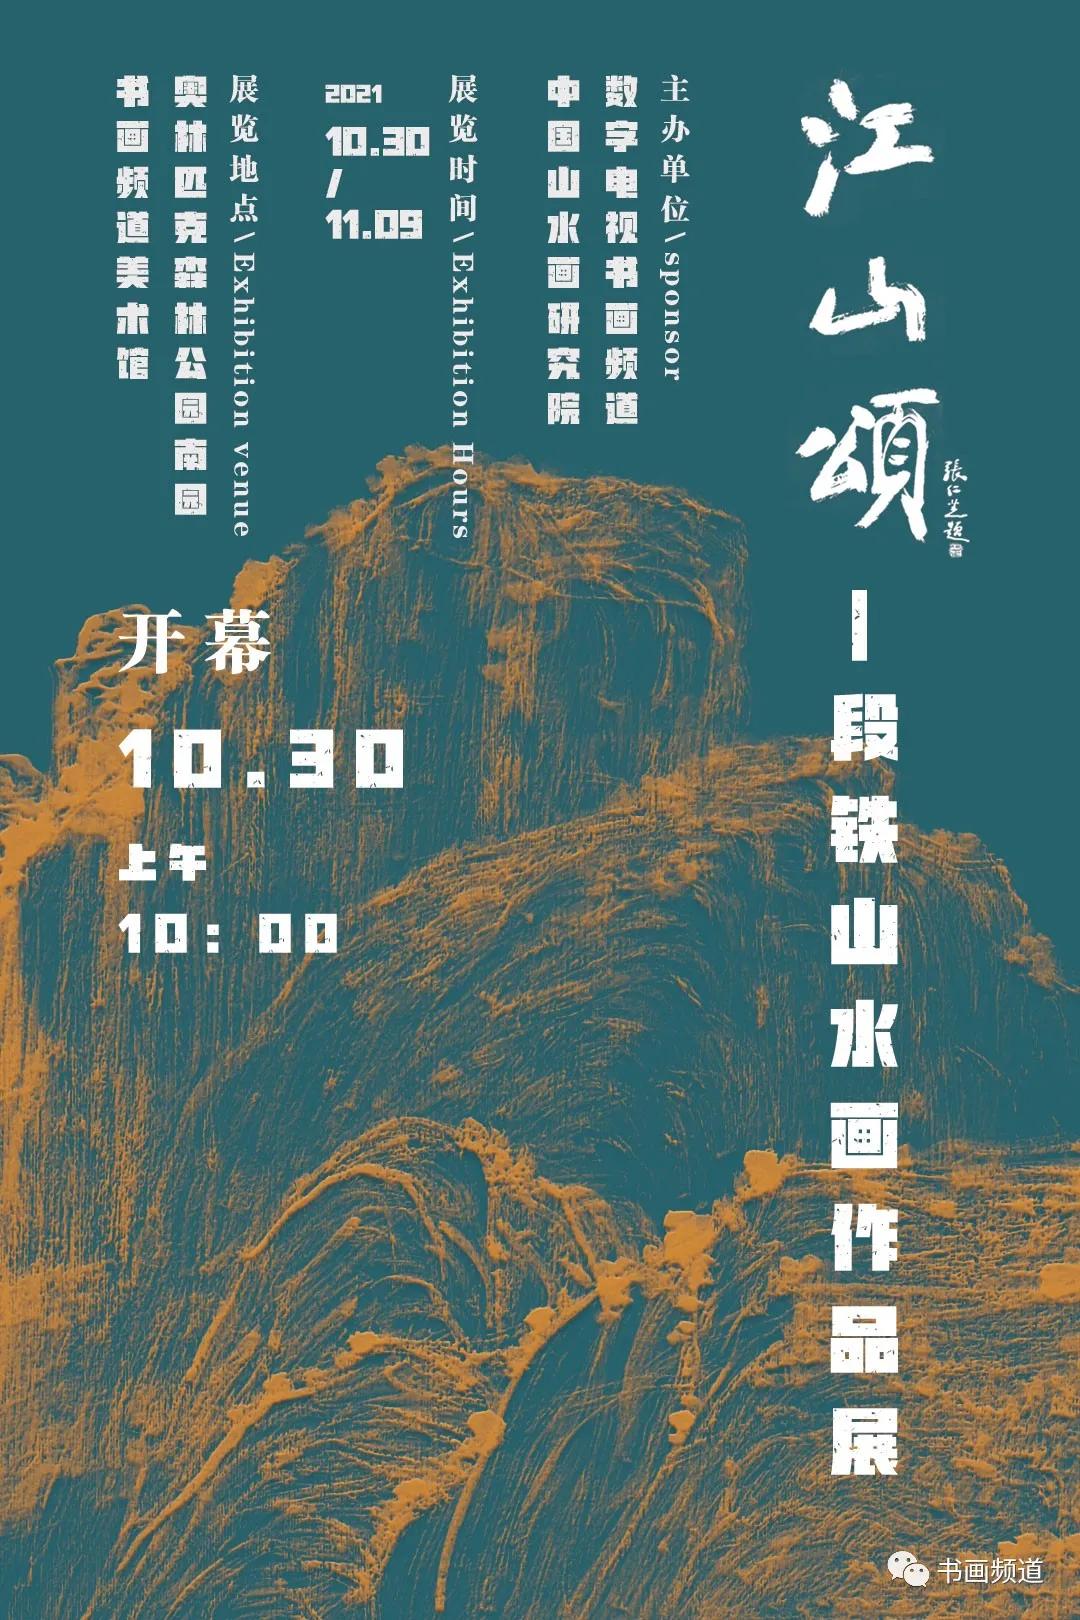 江山颂——段铁山水画作品展在京举行